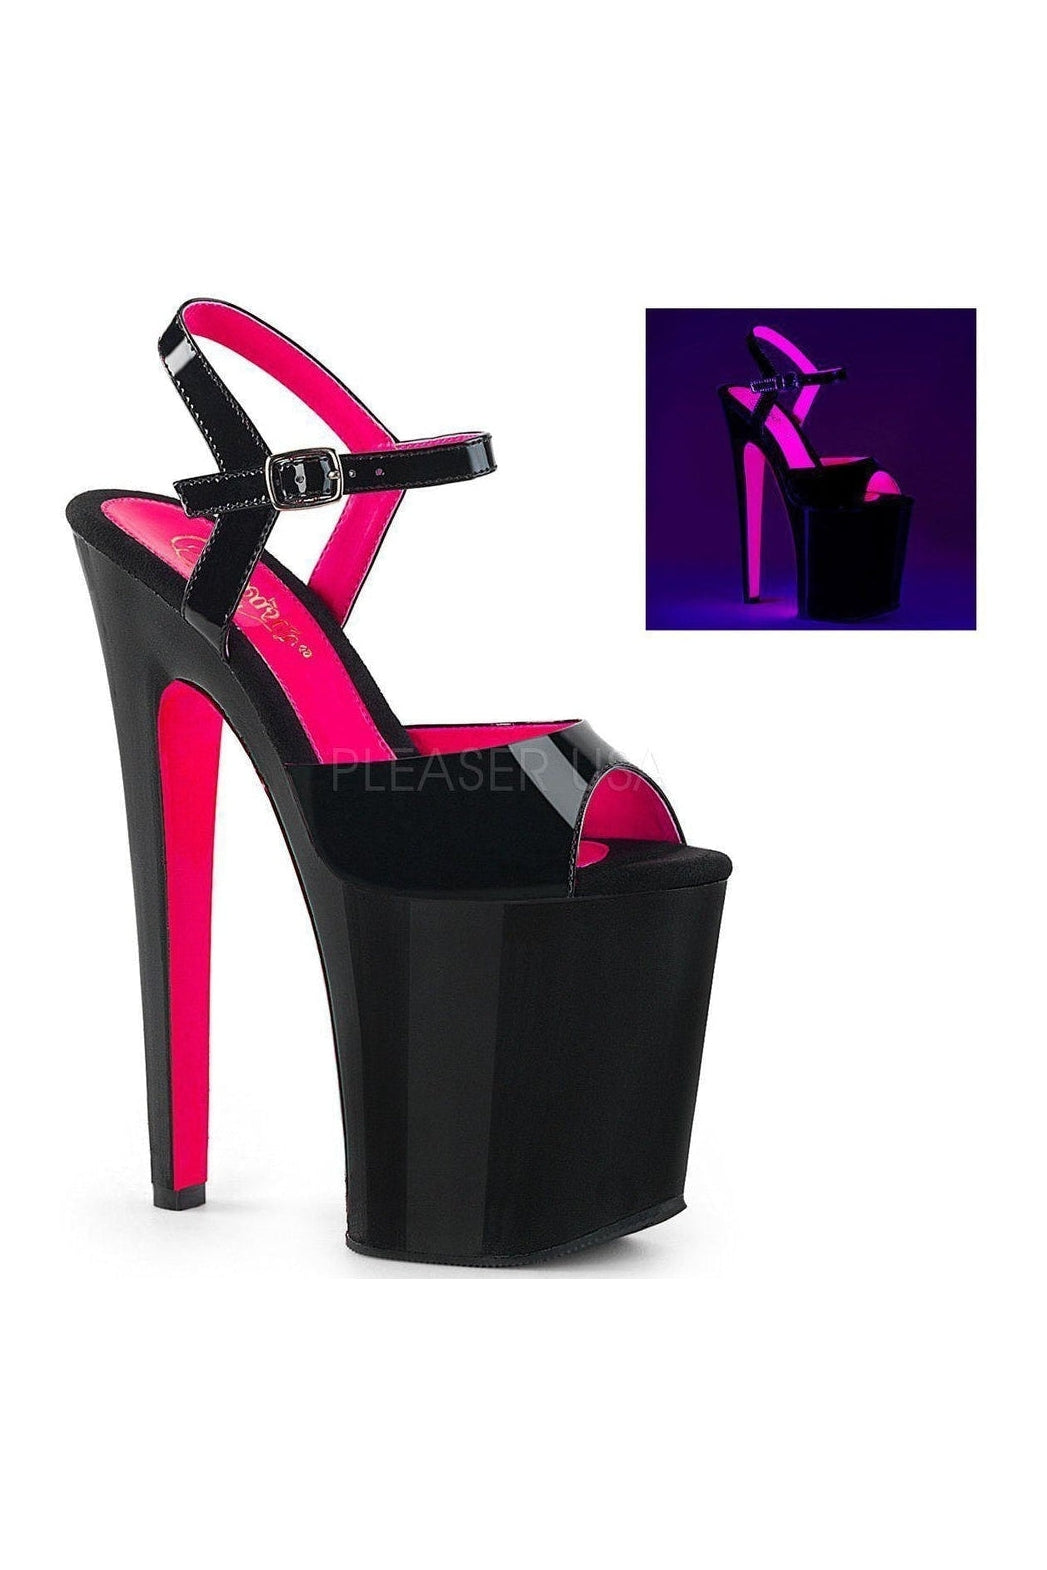 XTREME-809TT Platform Sandal | Black Patent-Pleaser-Black-Sandals-SEXYSHOES.COM